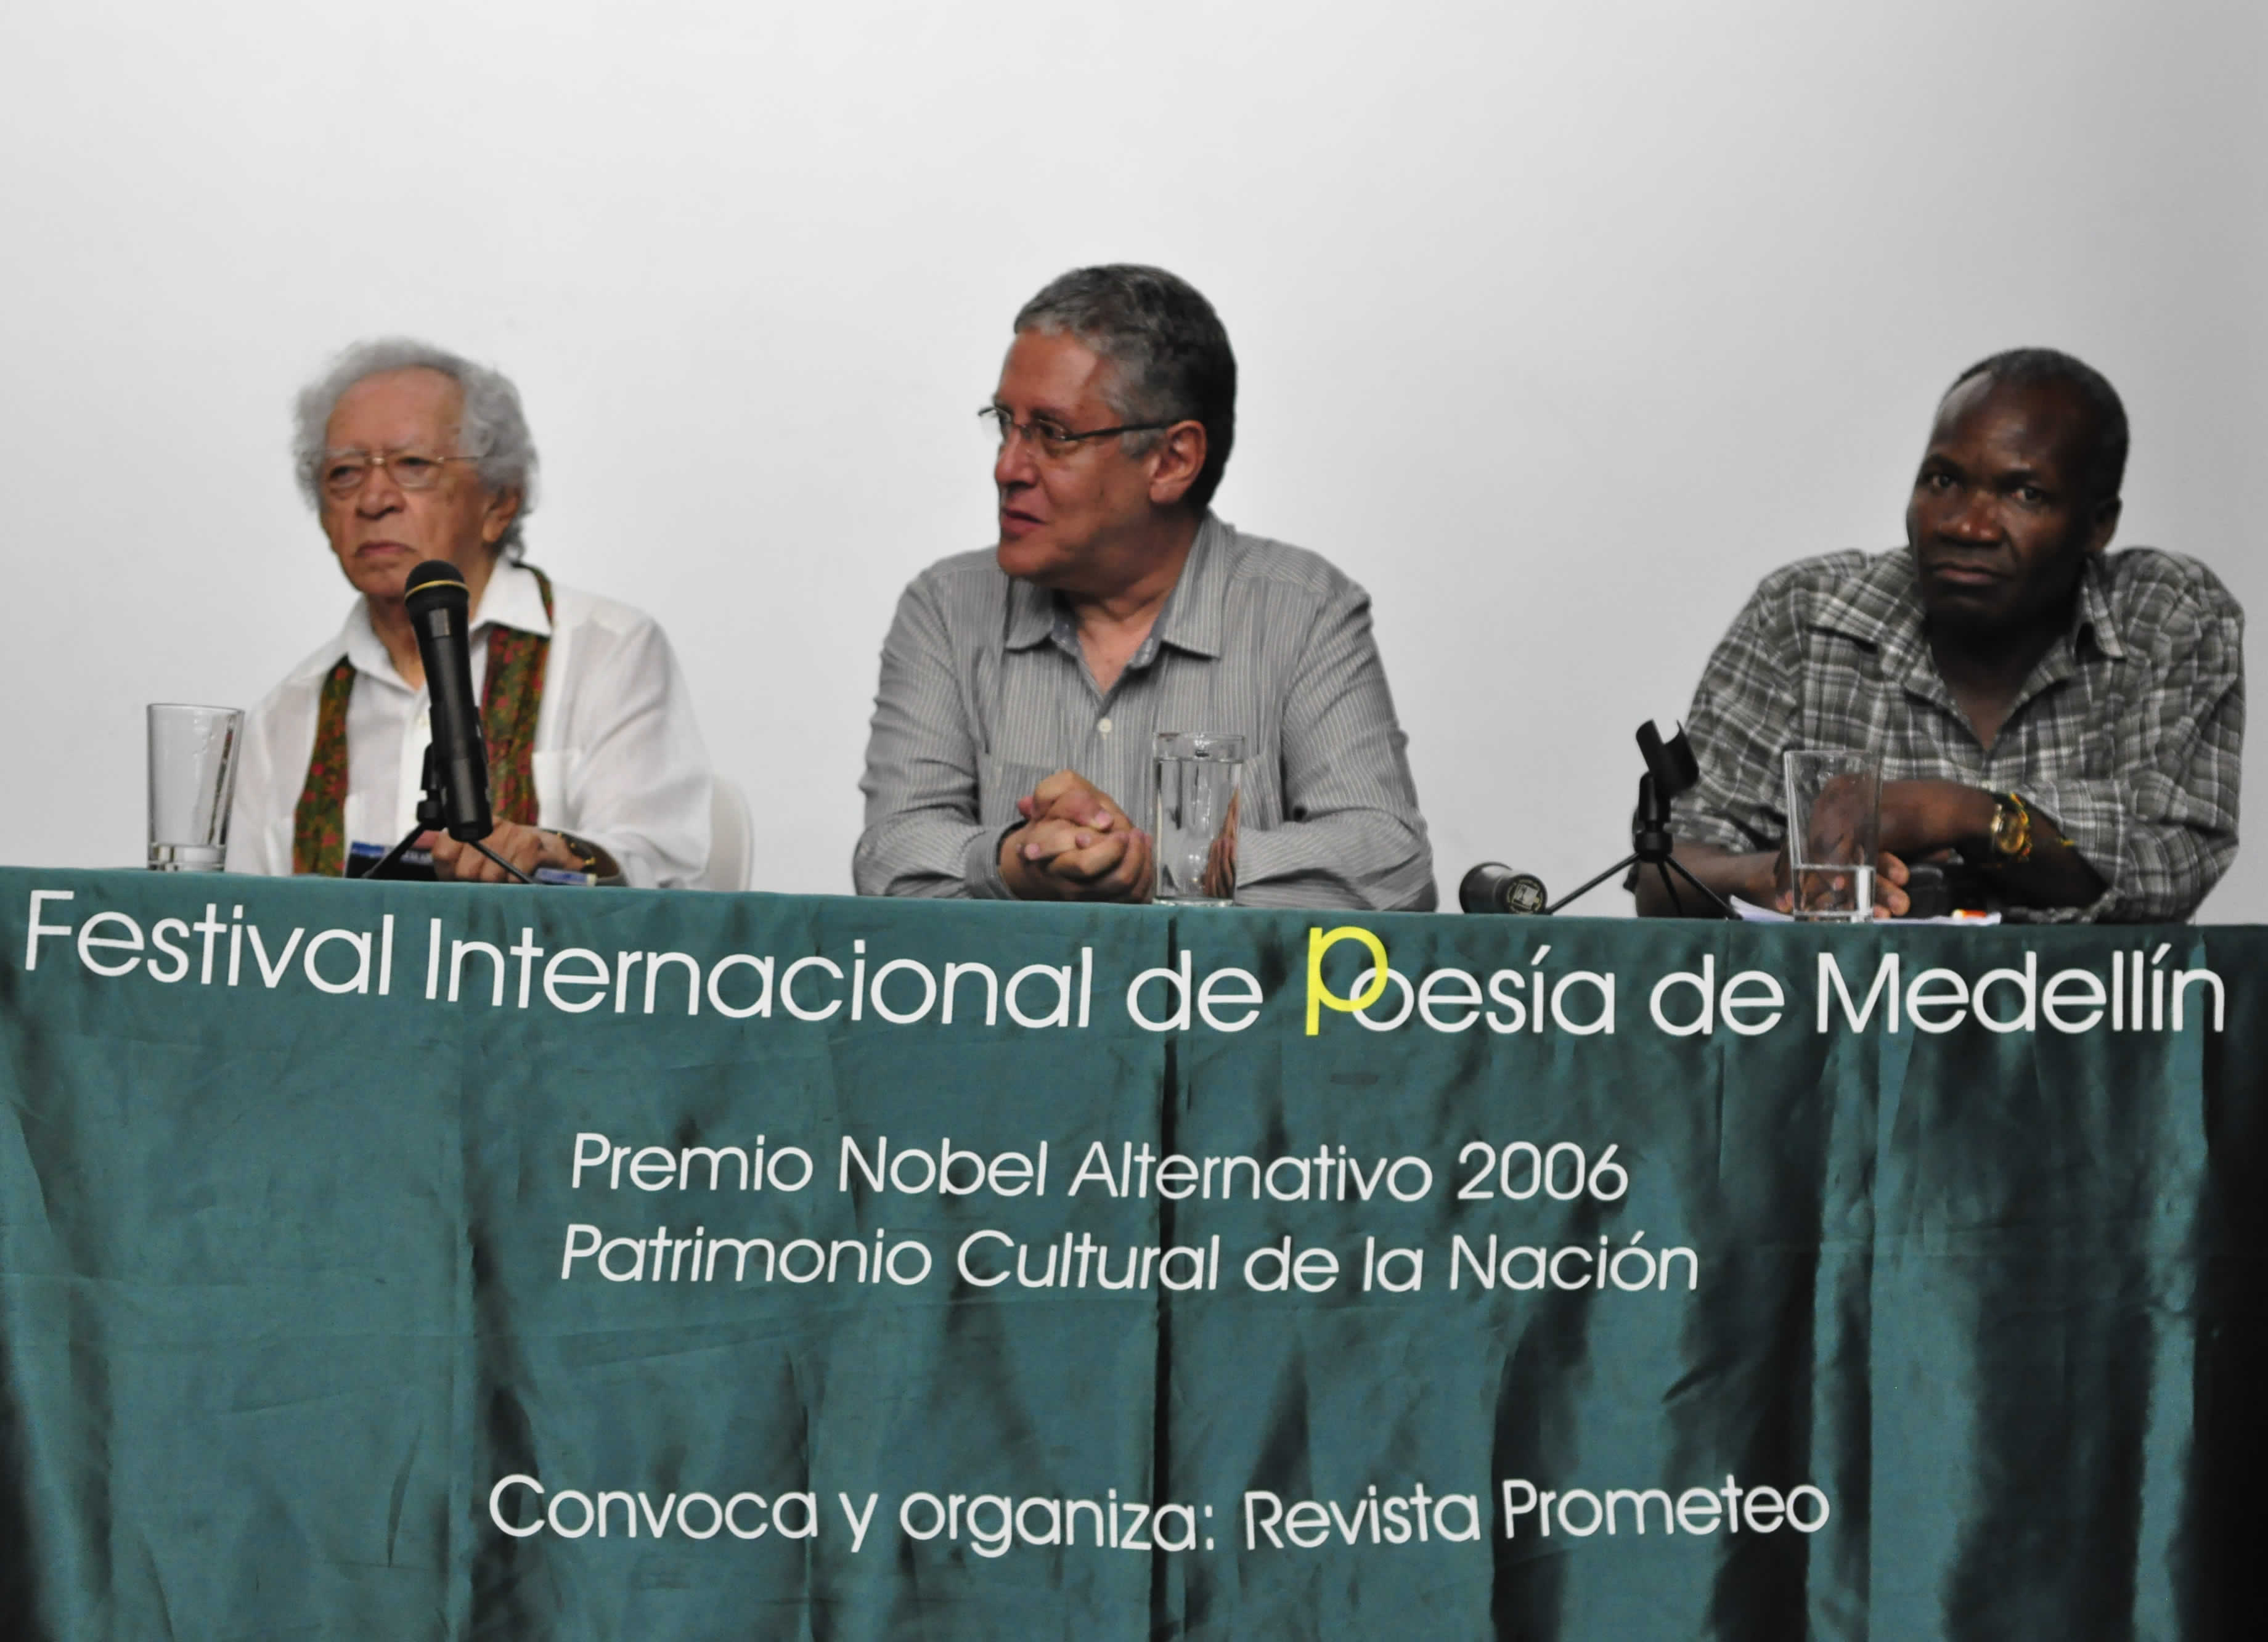 Plano de la mesa de lectura, de izquierda a derecha: Thiago de Mello en primer plano, Carlos Vásquez (Colombia), Gabriel Okoundji (Congo)